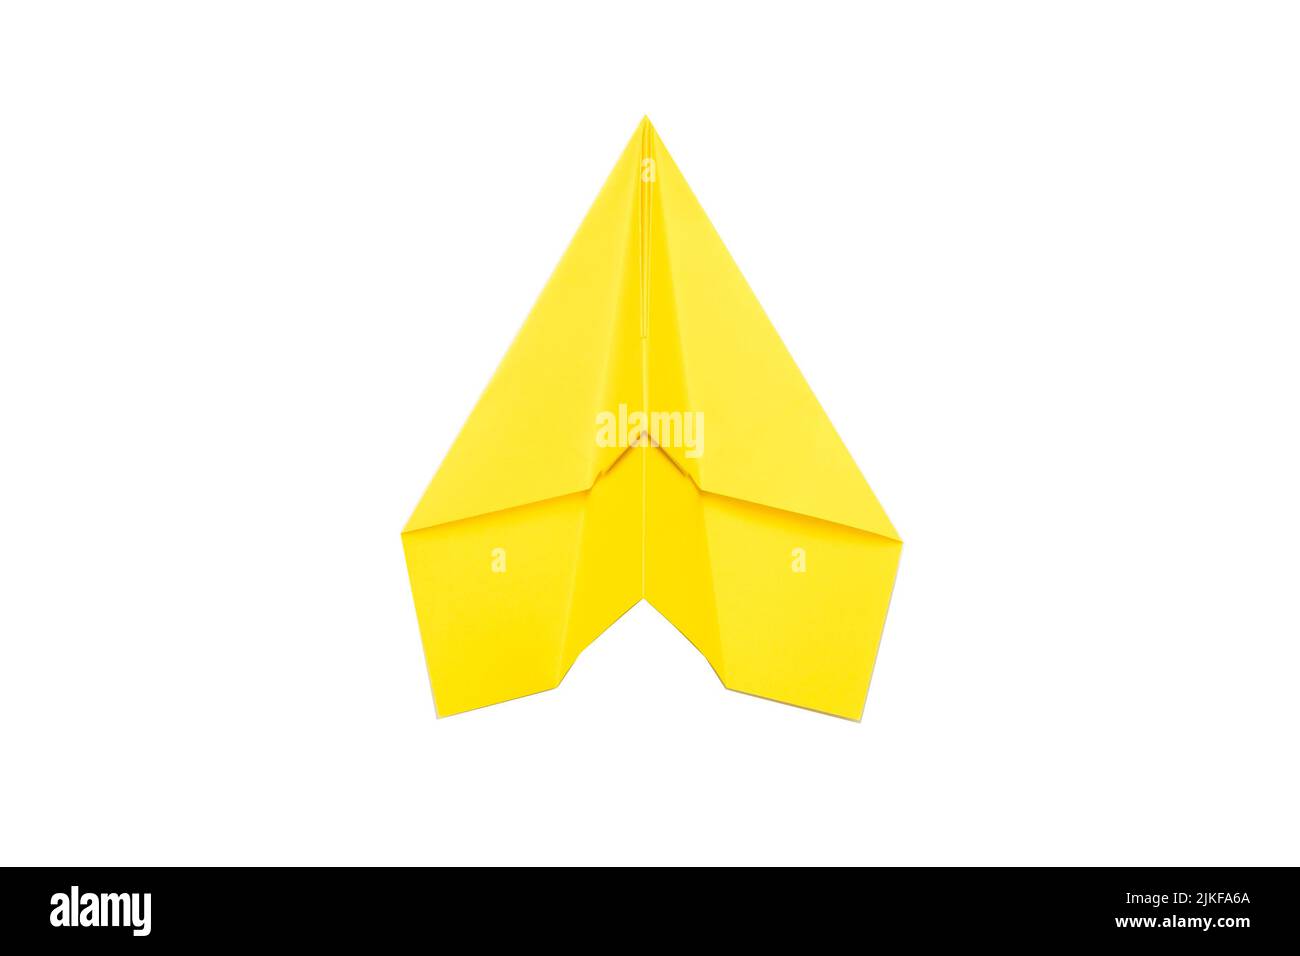 Persönliches Wachstum Ehrgeiz gelbes Papier Flugzeug Stockfoto